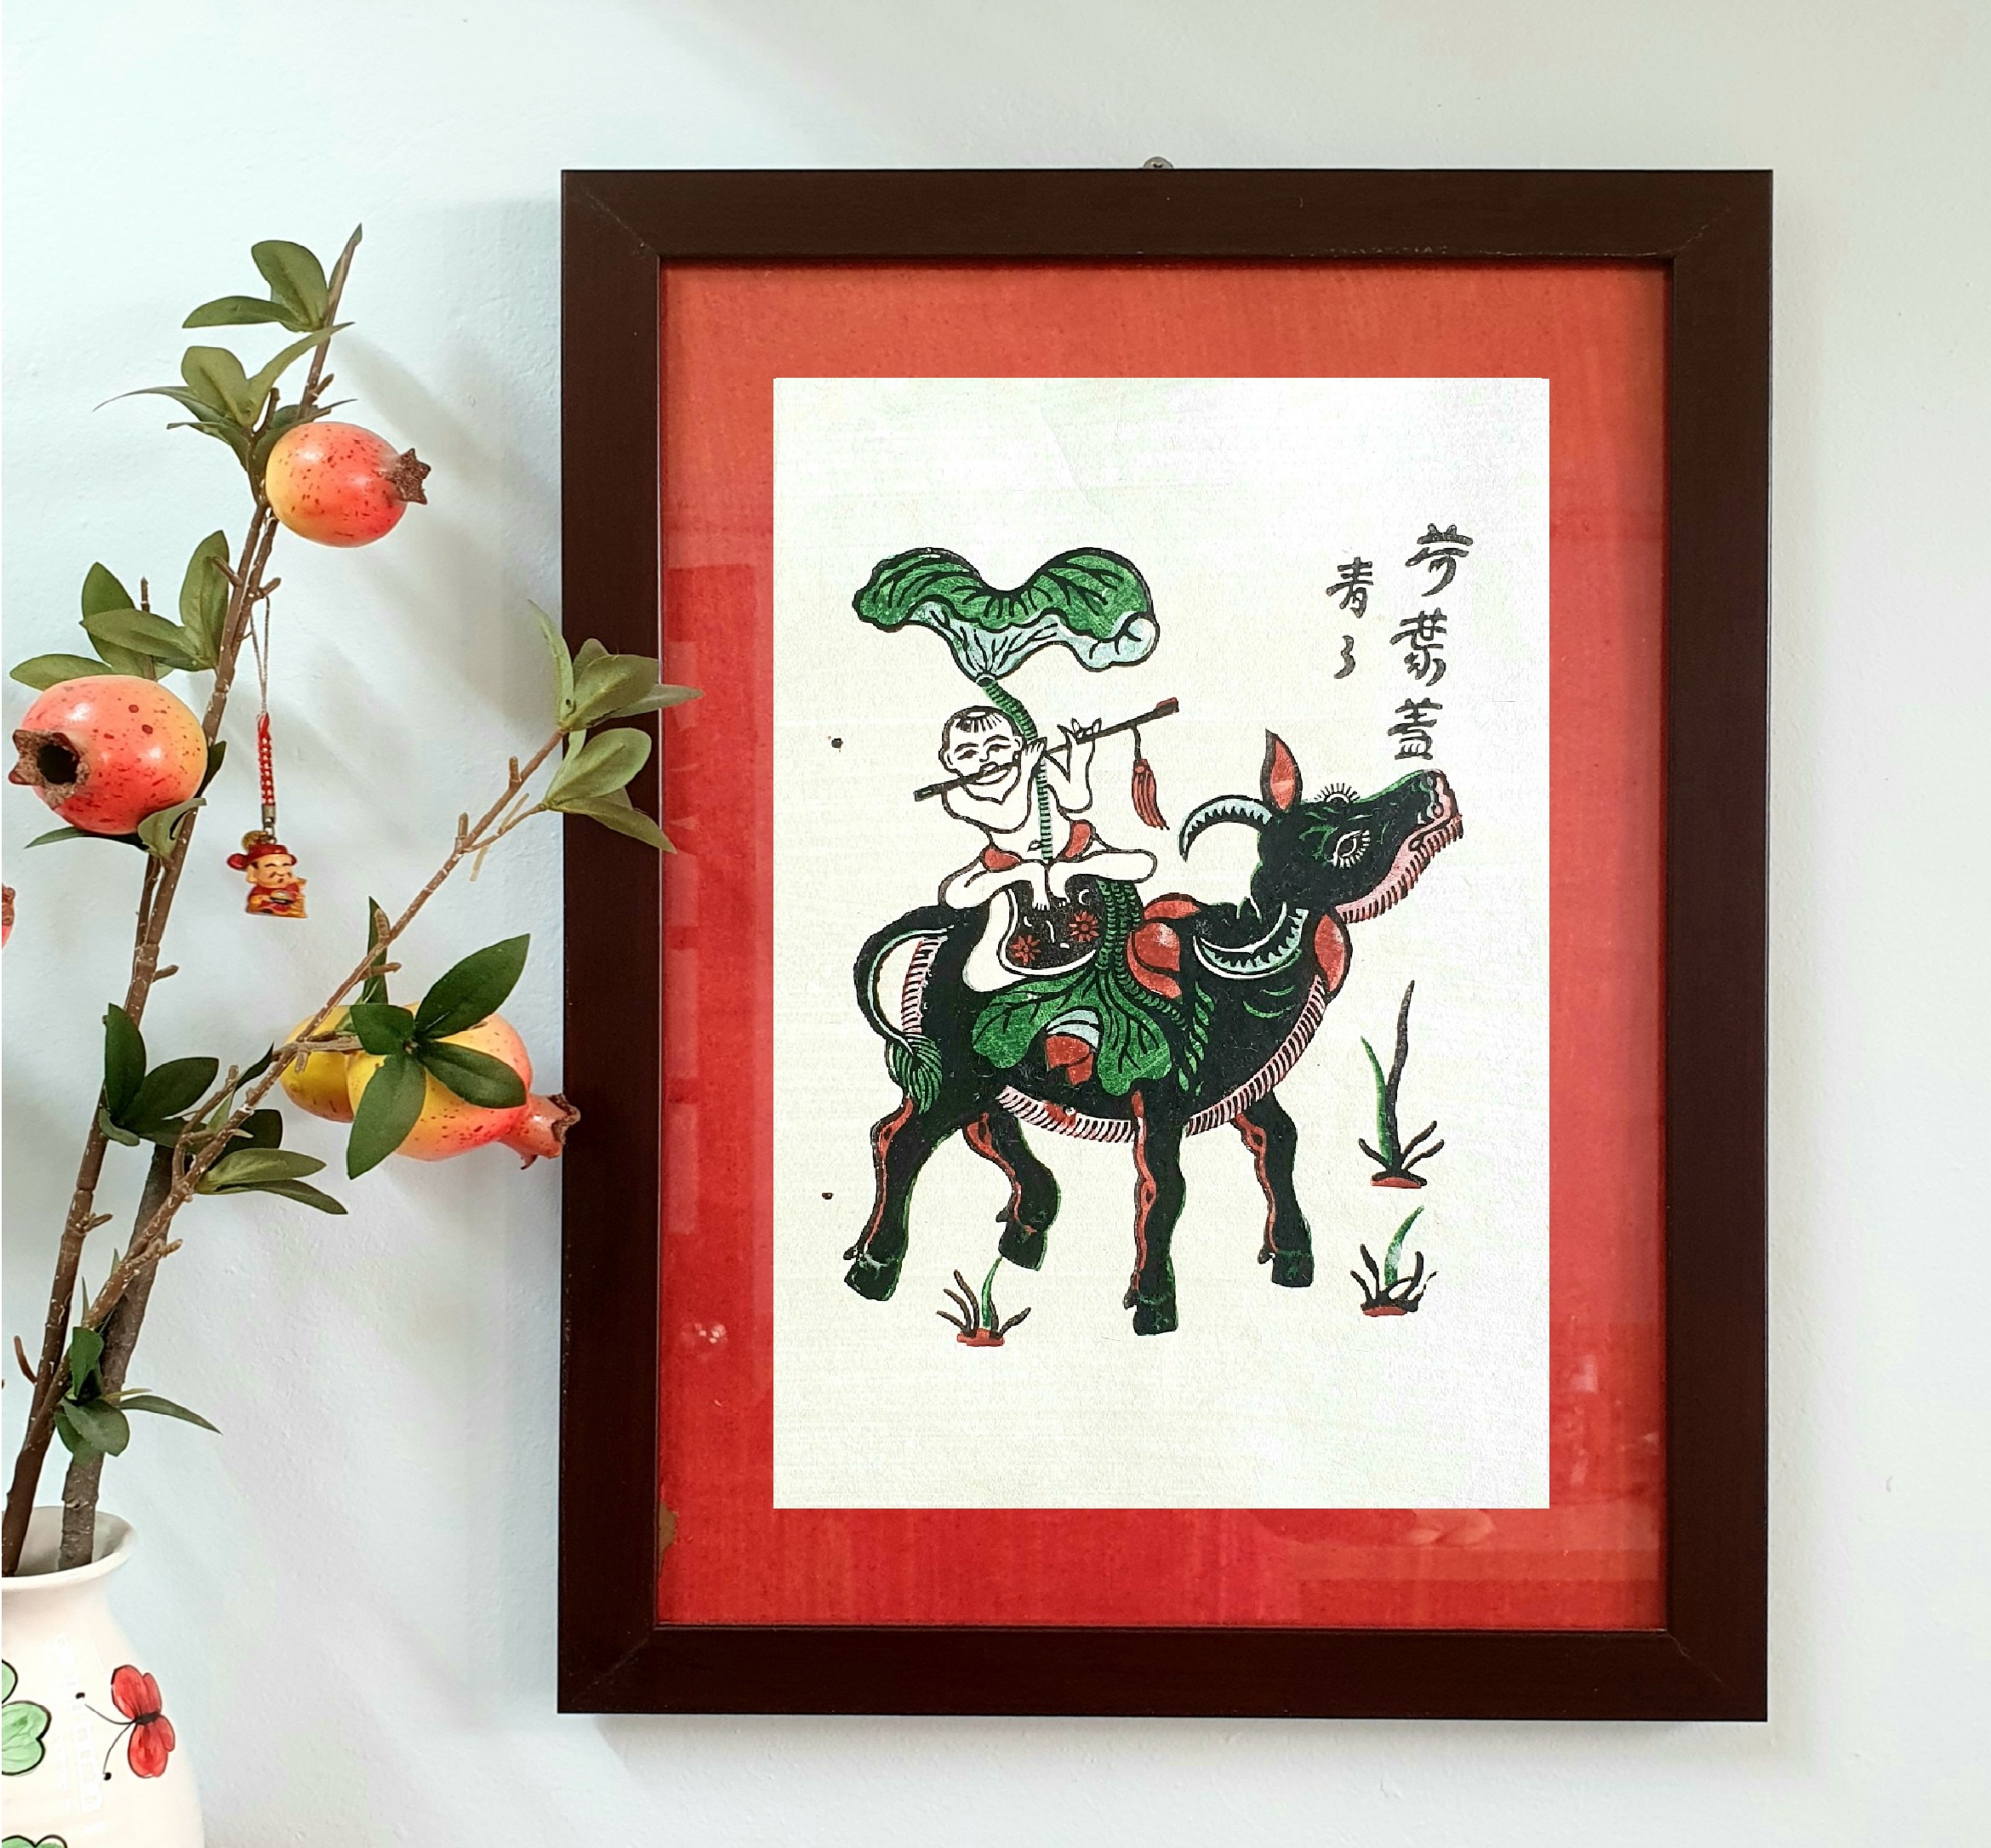 Tranh Đông Hồ Chăn trâu thổi sáo - Tranh khắc gỗ dân gian - Dong Ho folk woodcut painting